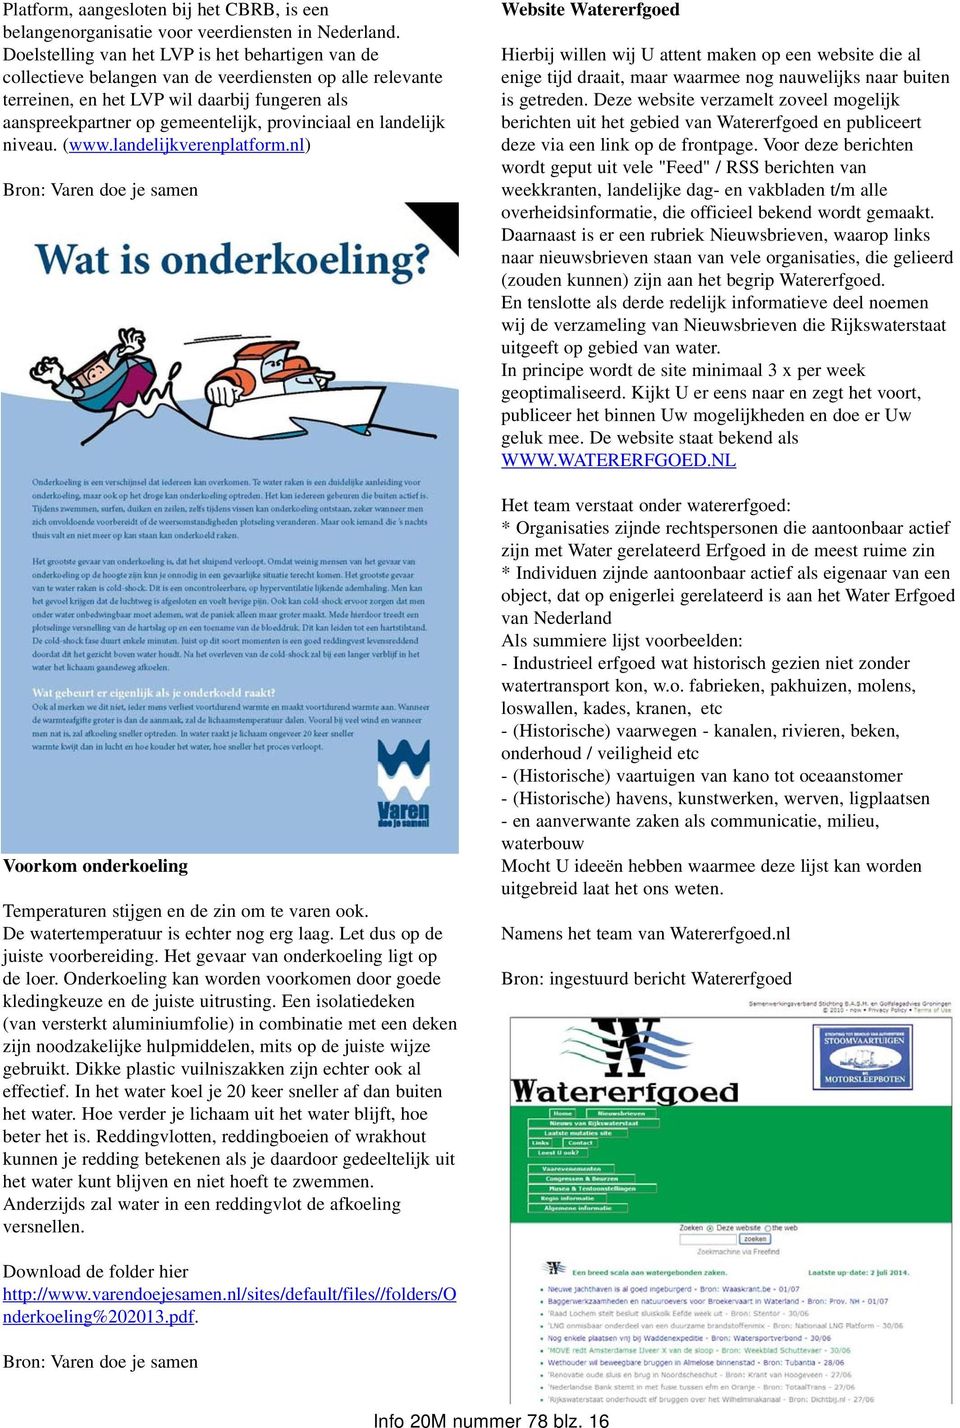 provinciaal en landelijk niveau. (www.landelijkverenplatform.nl) Bron: Varen doe je samen Voorkom onderkoeling Temperaturen stijgen en de zin om te varen ook.